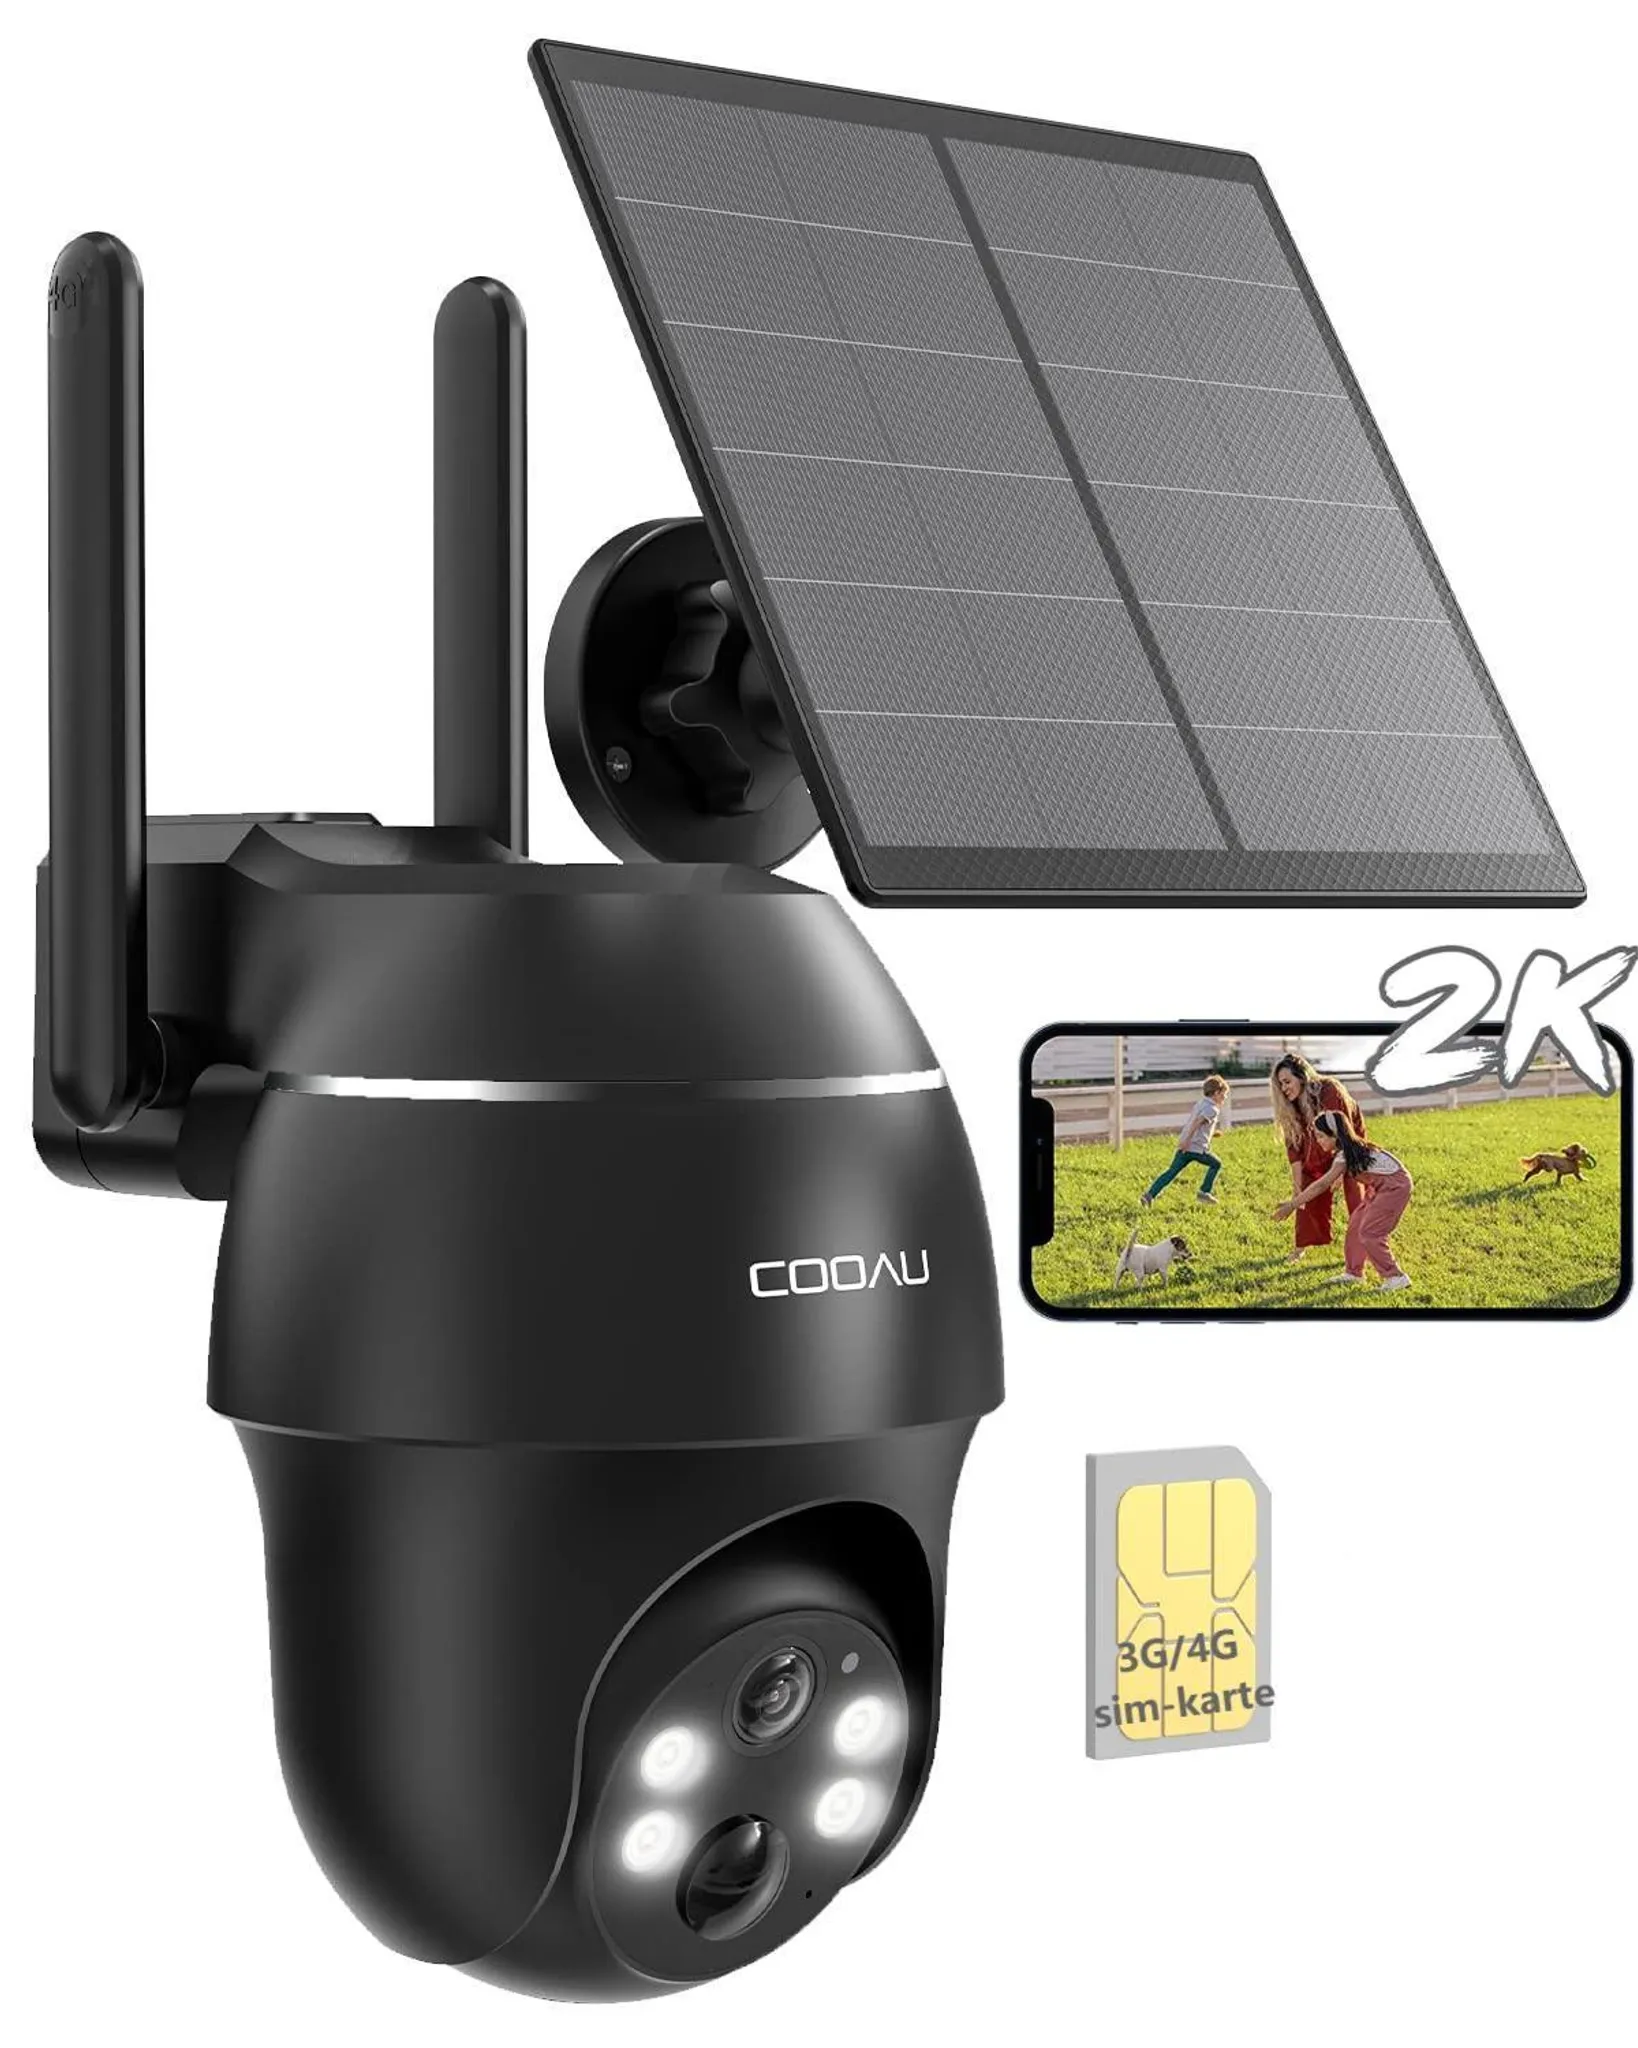 COOAU 4G LTE Überwachungskamera Außen mit